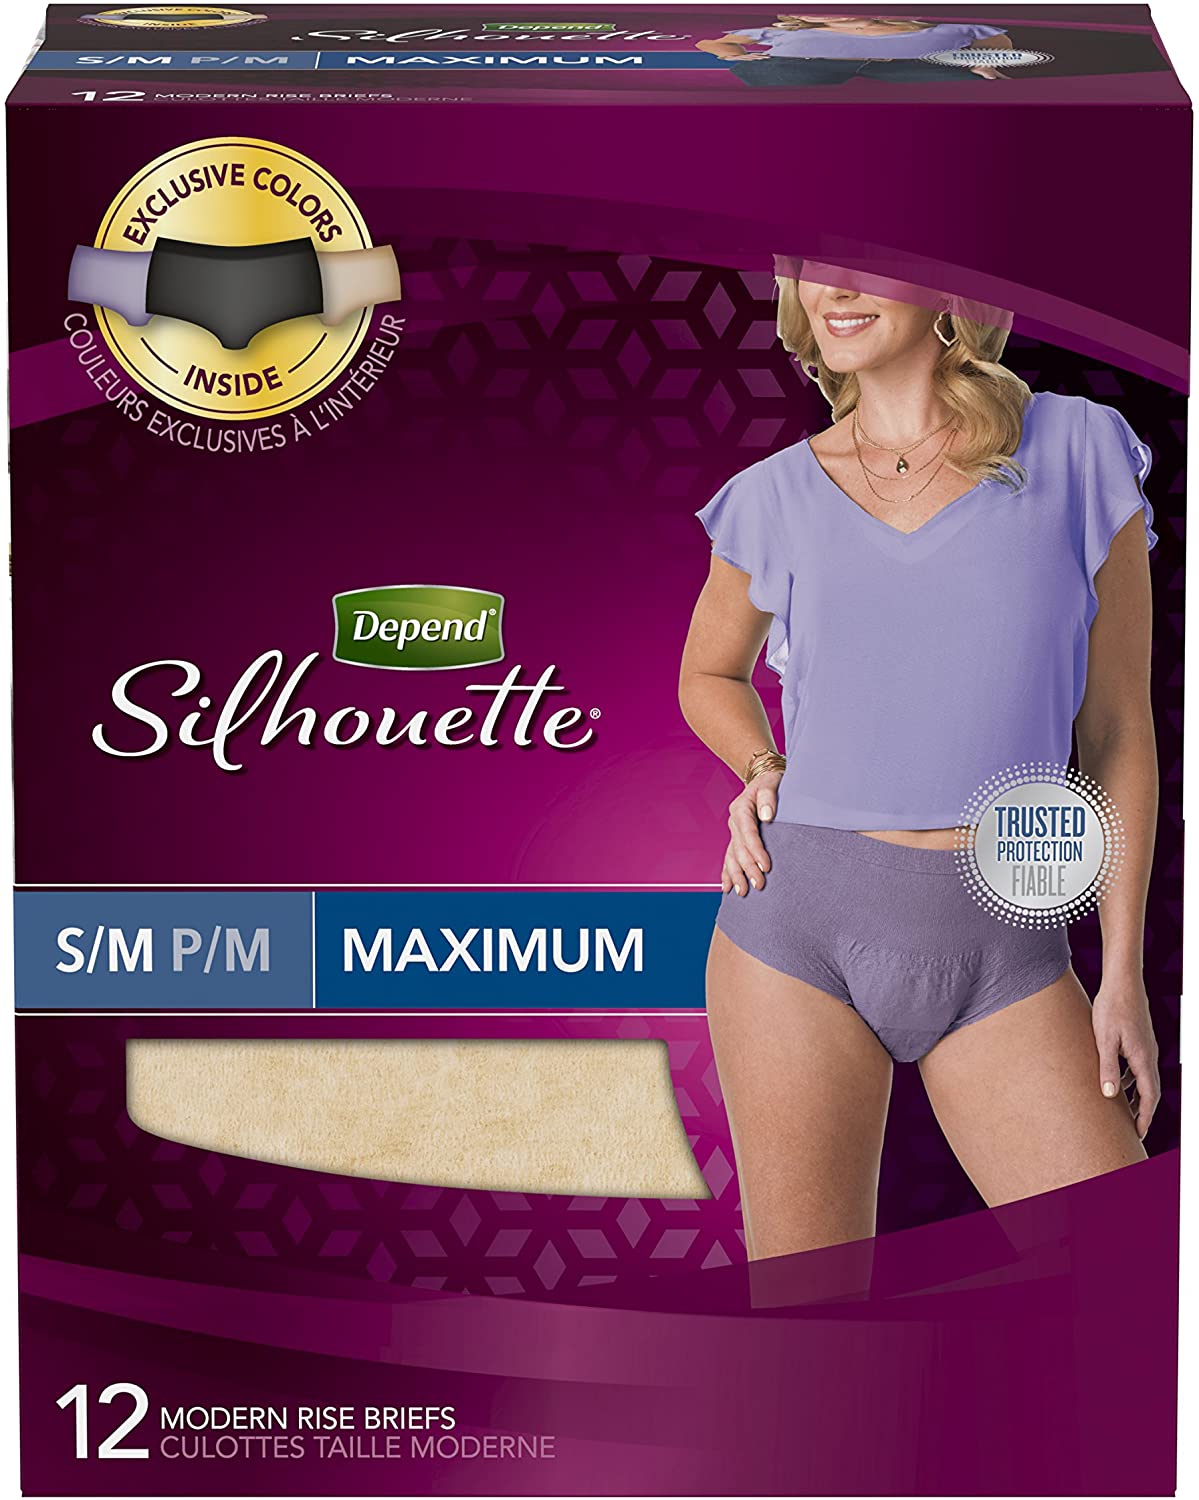 cloth incontinence underwear